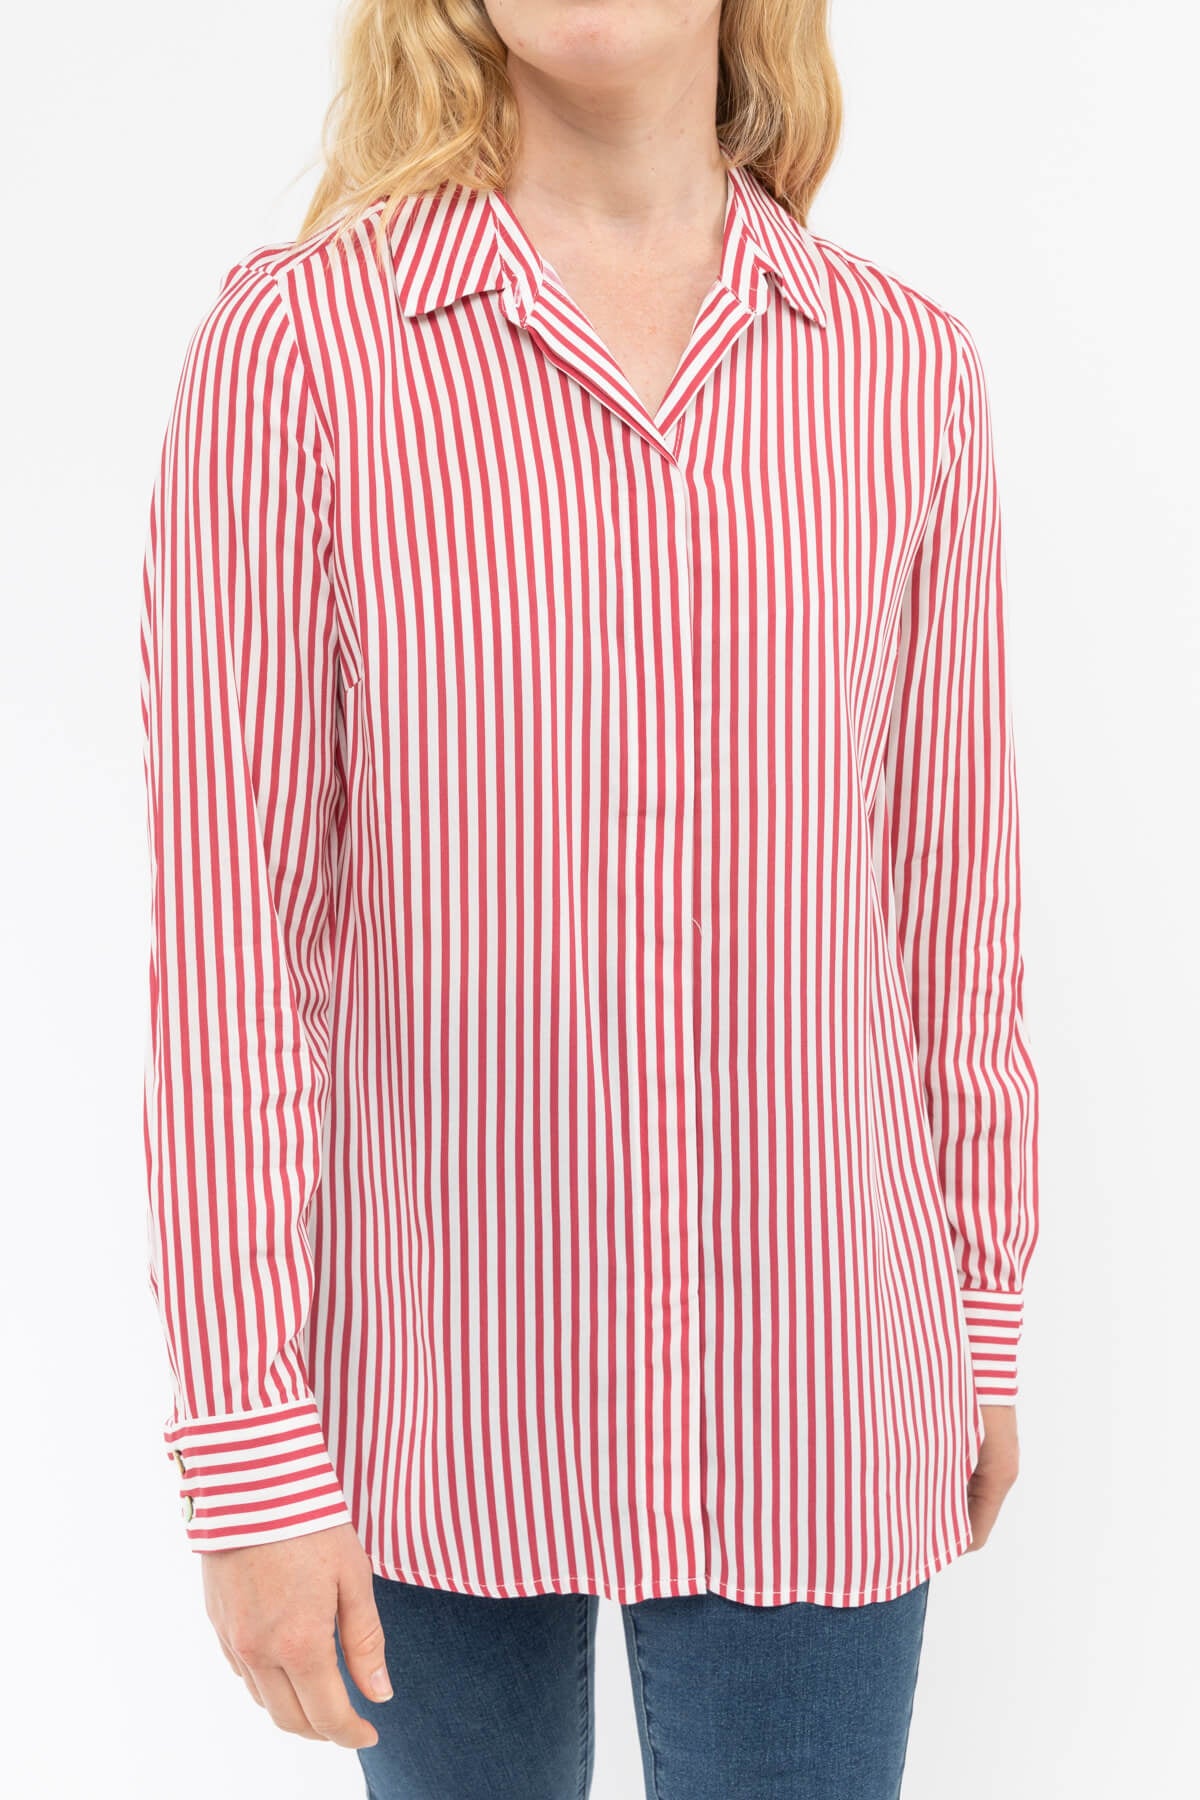 Stripe Shirt Raspberry